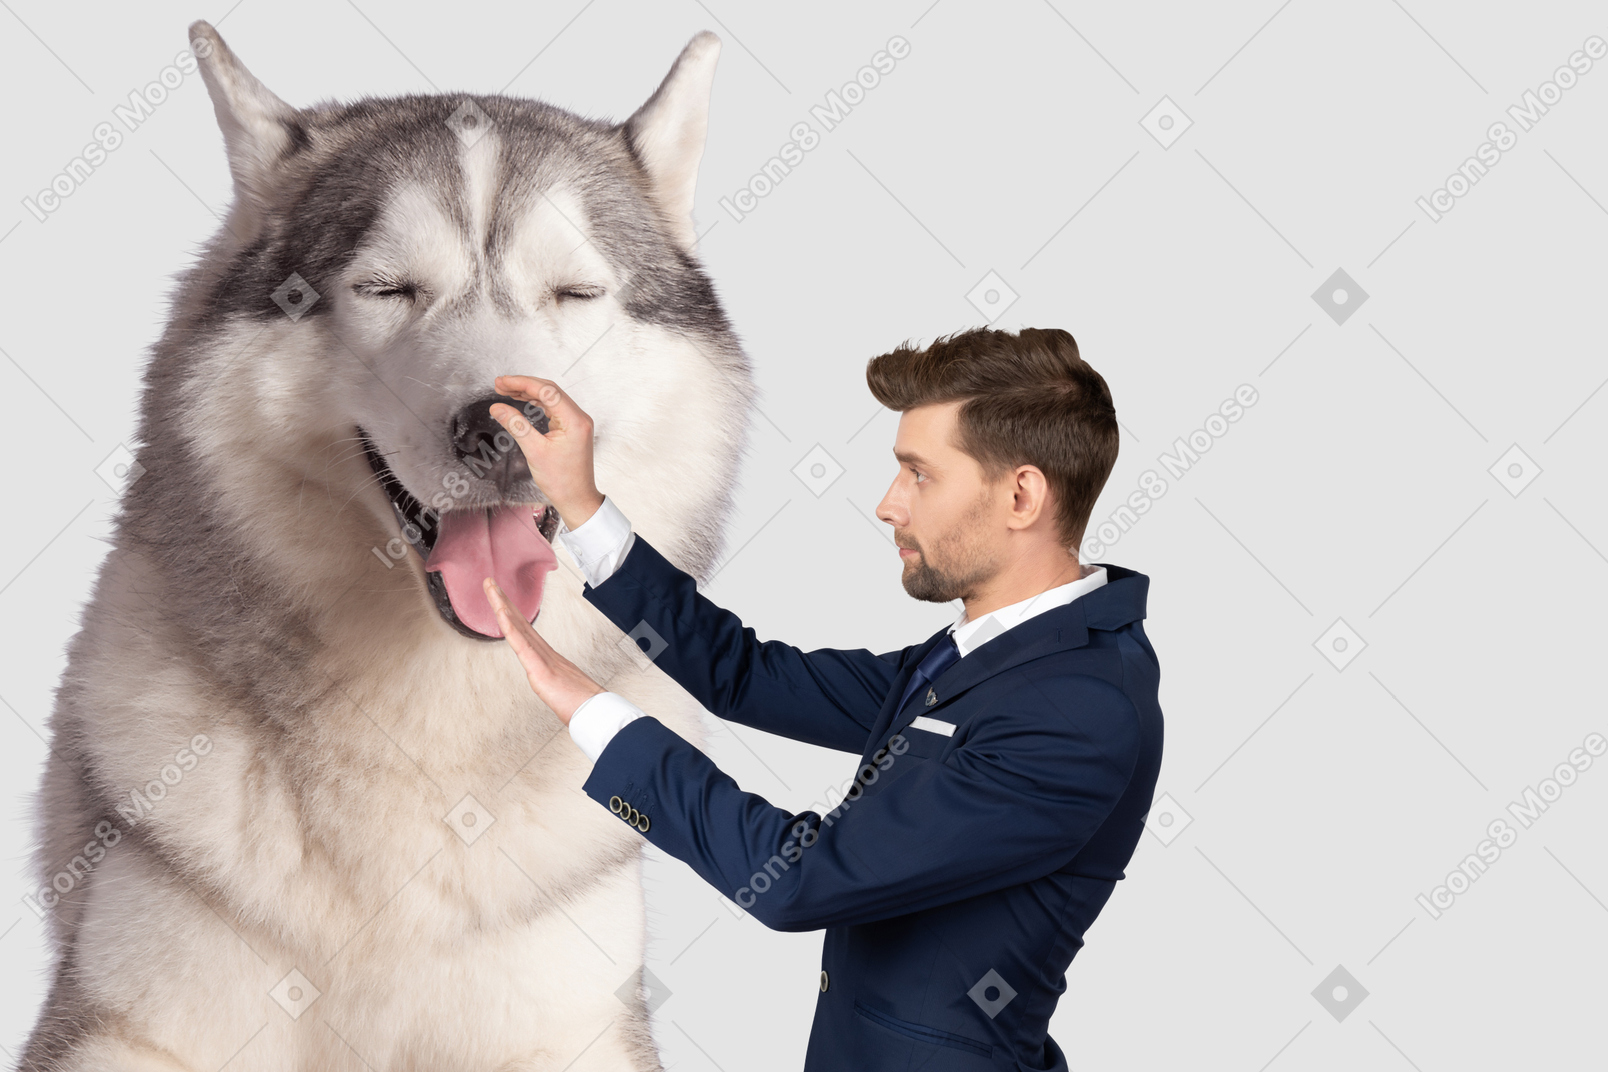 Homme touchant le nez d'un chien géant